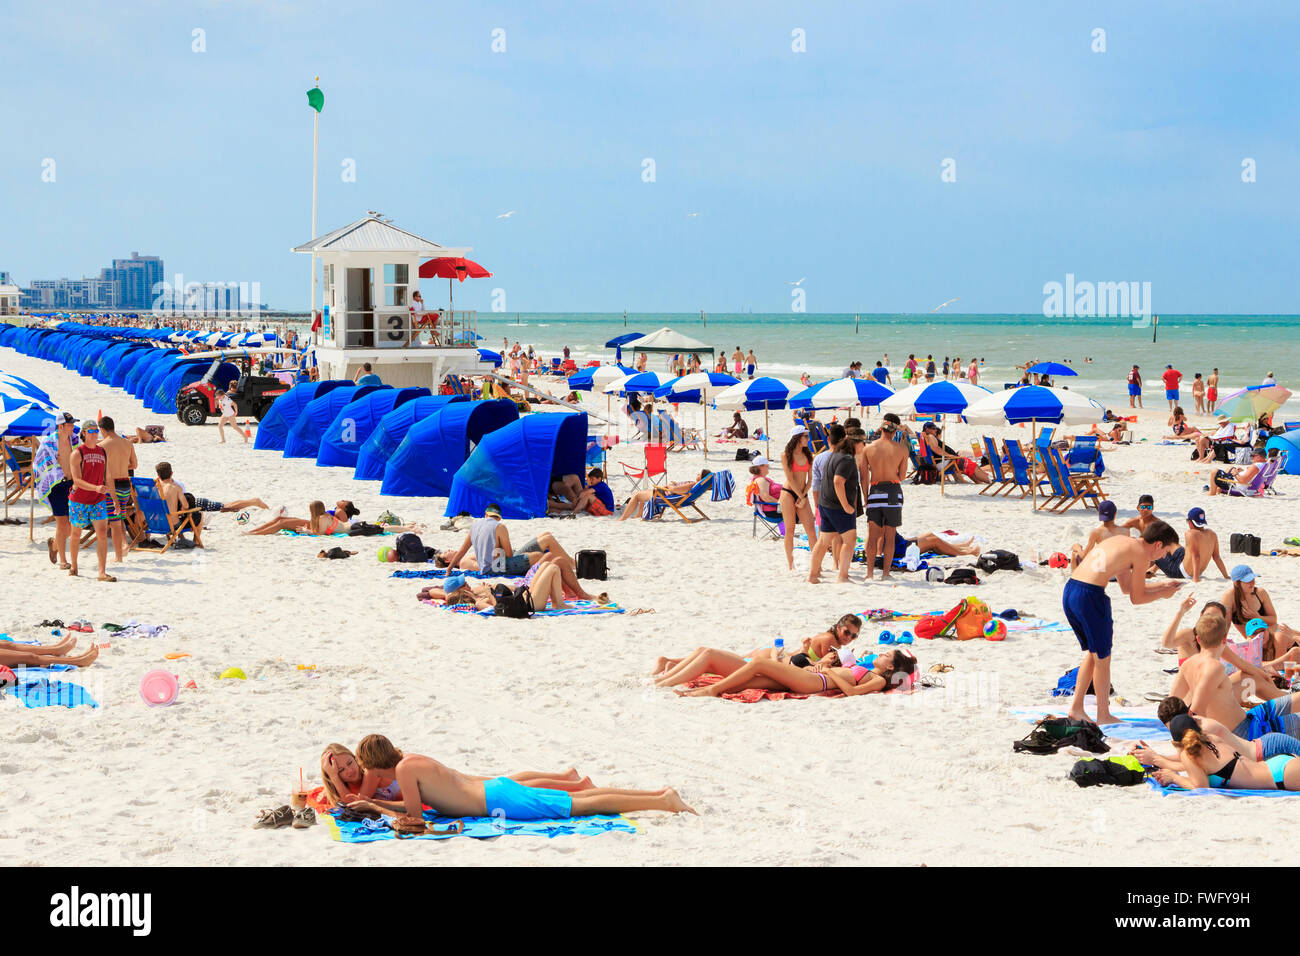 La plage de Clearwater, en Floride, l'Amérique, USA Banque D'Images